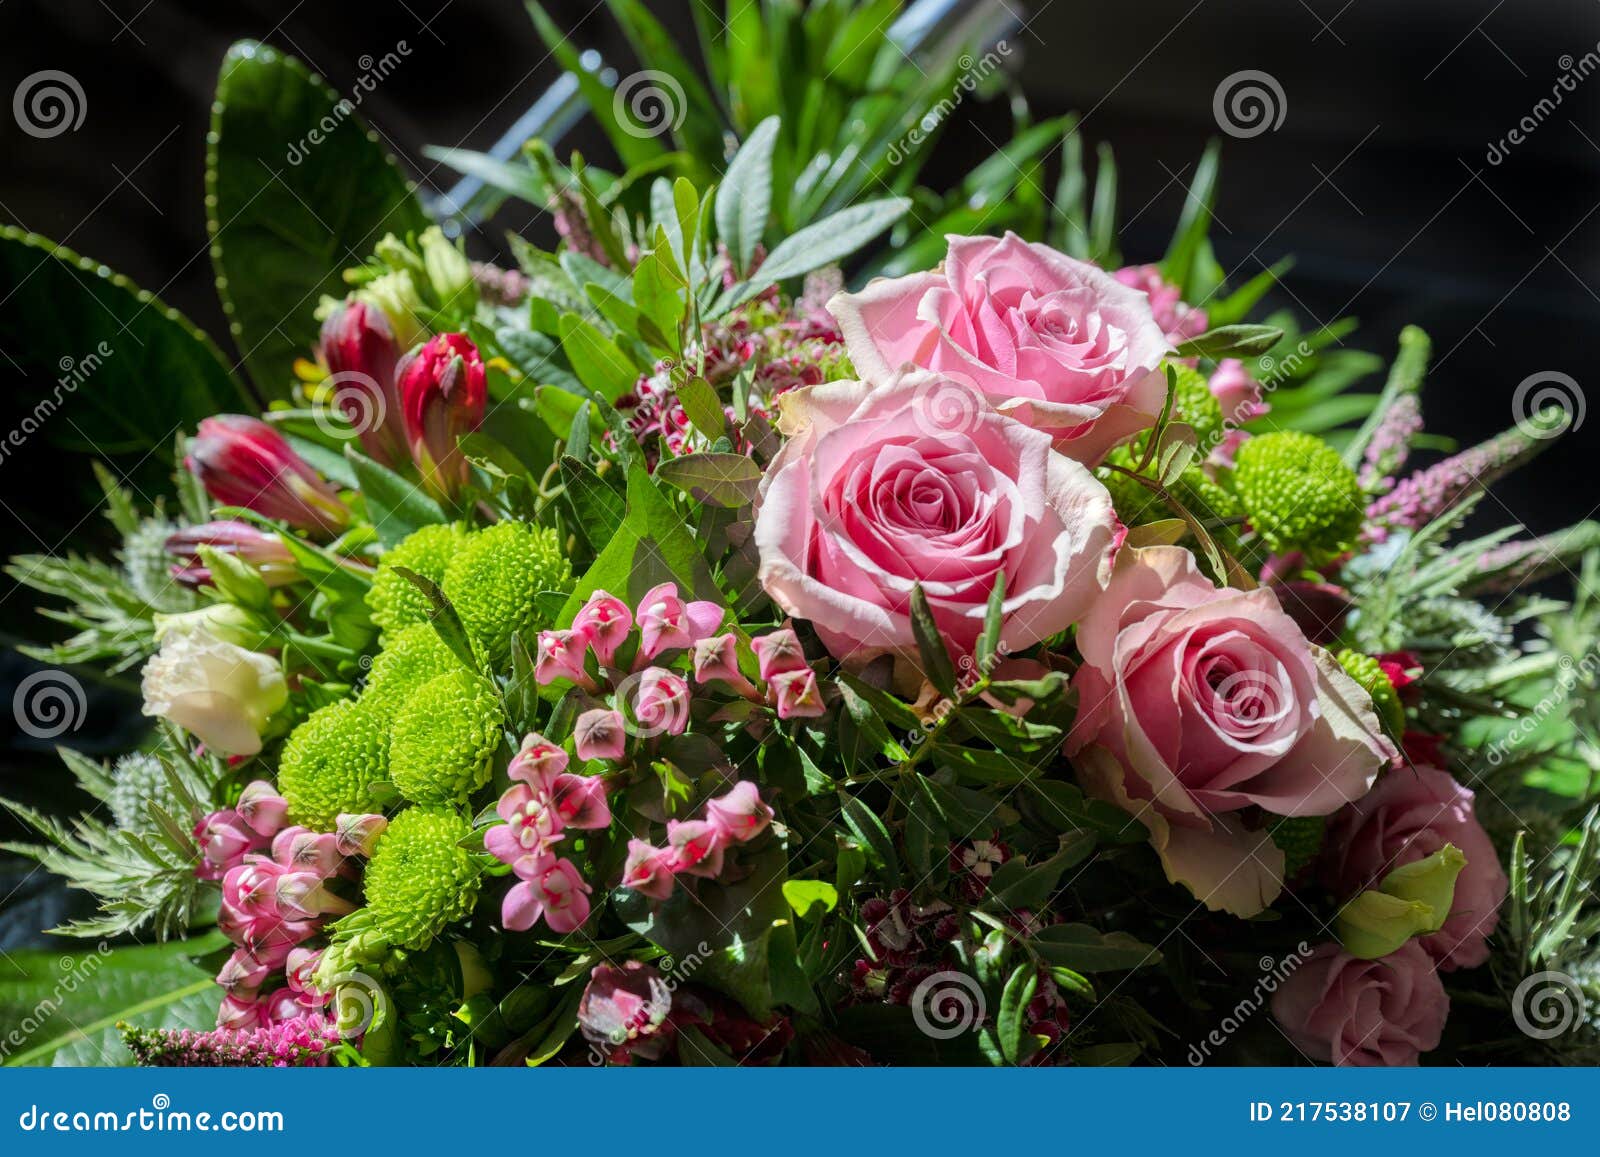 Arranjo De Flores De Verão Com Lindas Rosas Cor-de-rosa, Gramíneas Verdes E  Folhas. Bouquet Com Rosas Cor-de-rosa De Fundo Escuro Imagem de Stock -  Imagem de arranjo, buquê: 217538107